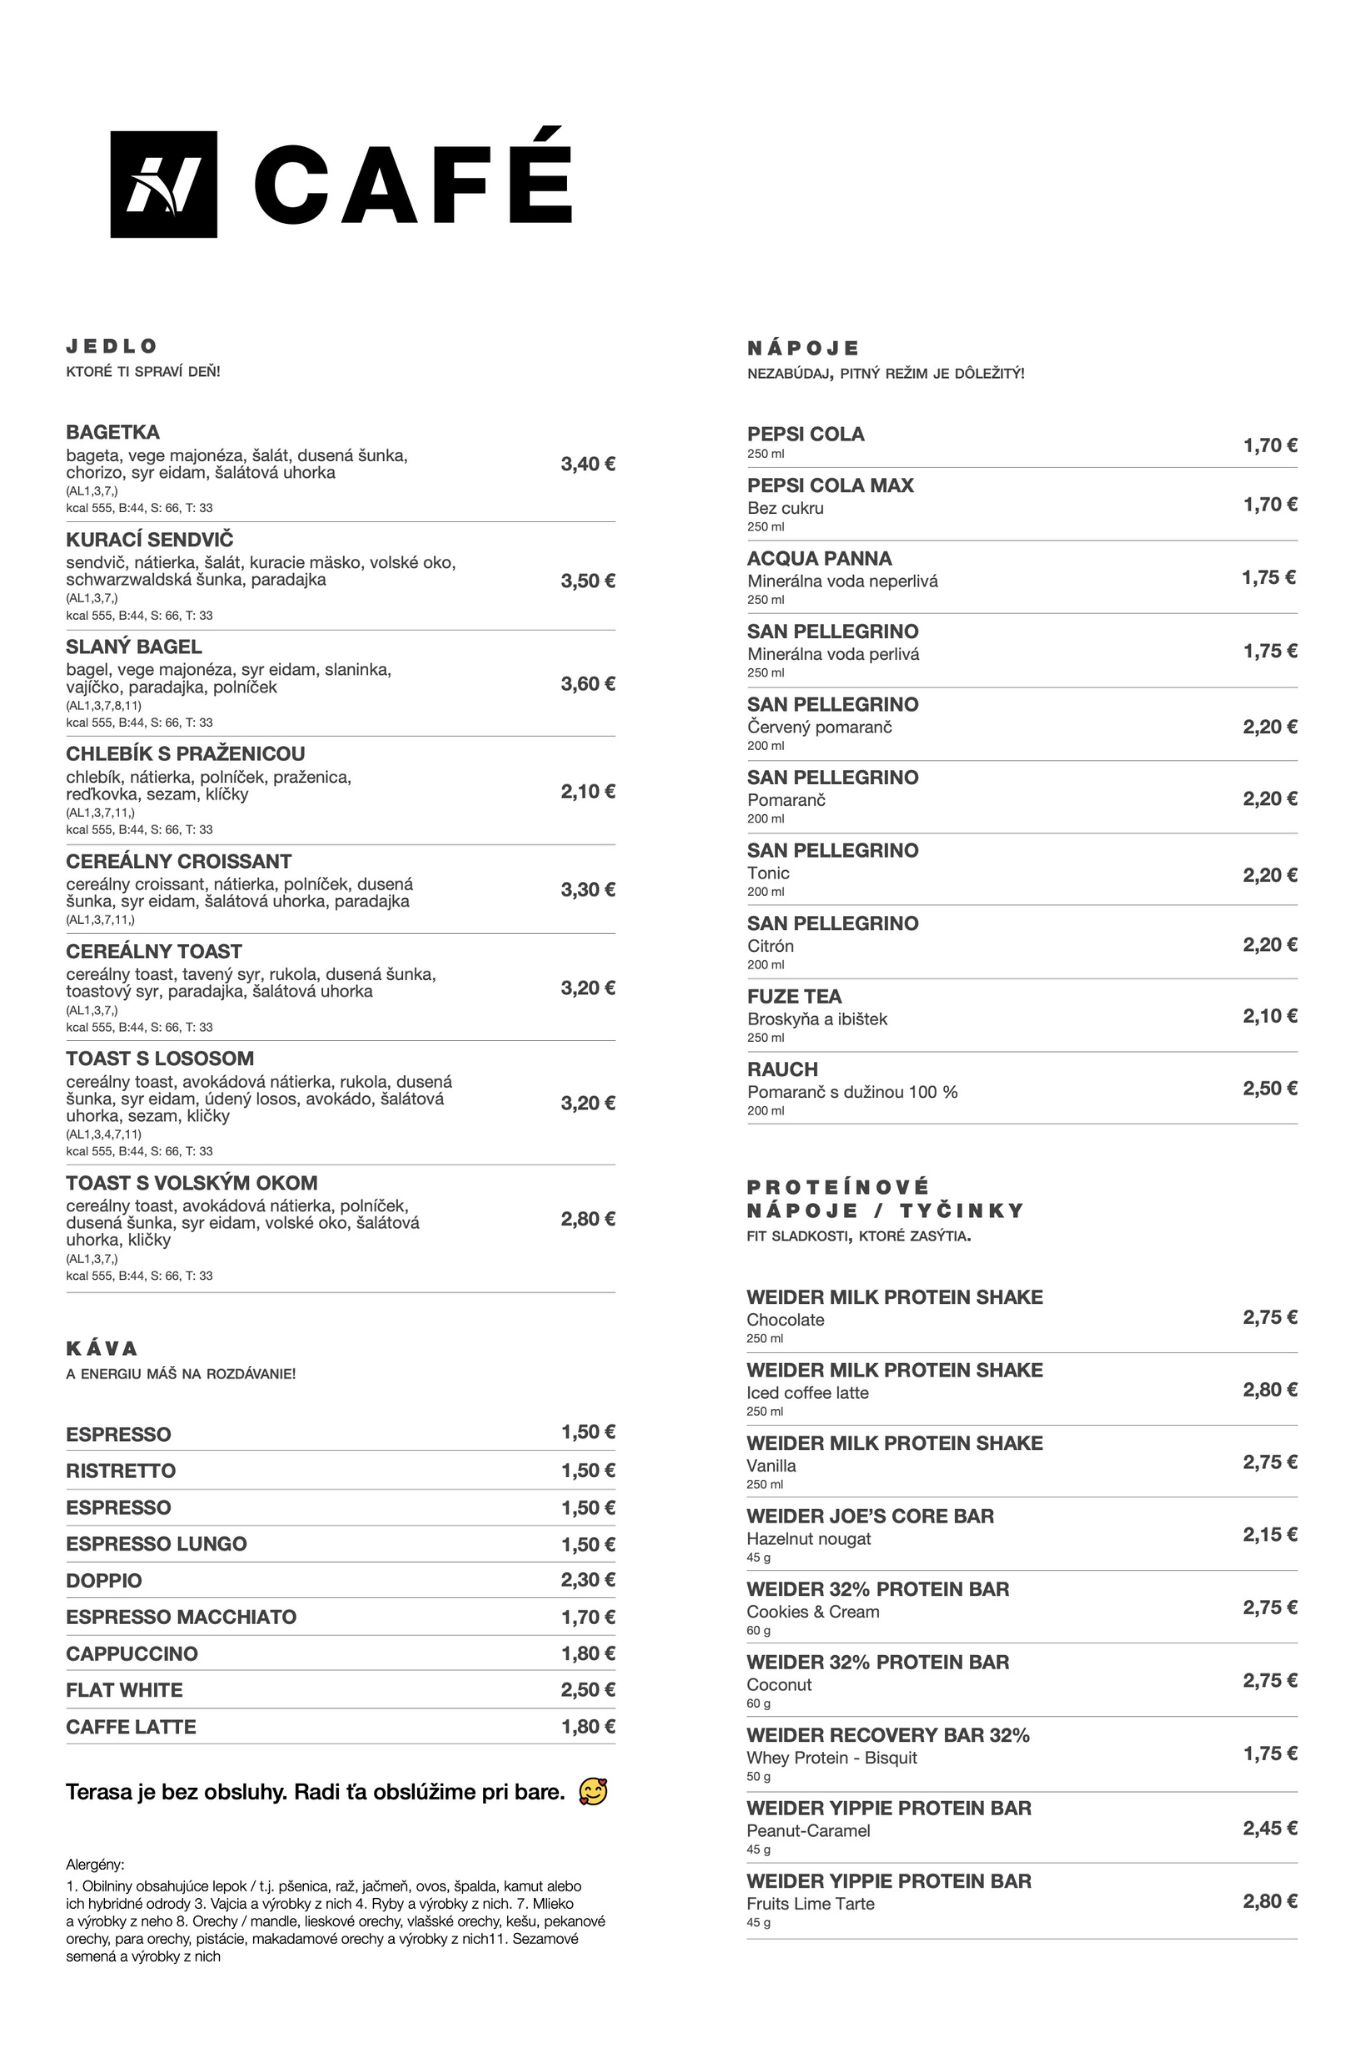 NEBBIA N Cafe NEBBIA kaviareň v Žiline napojoby listok menu